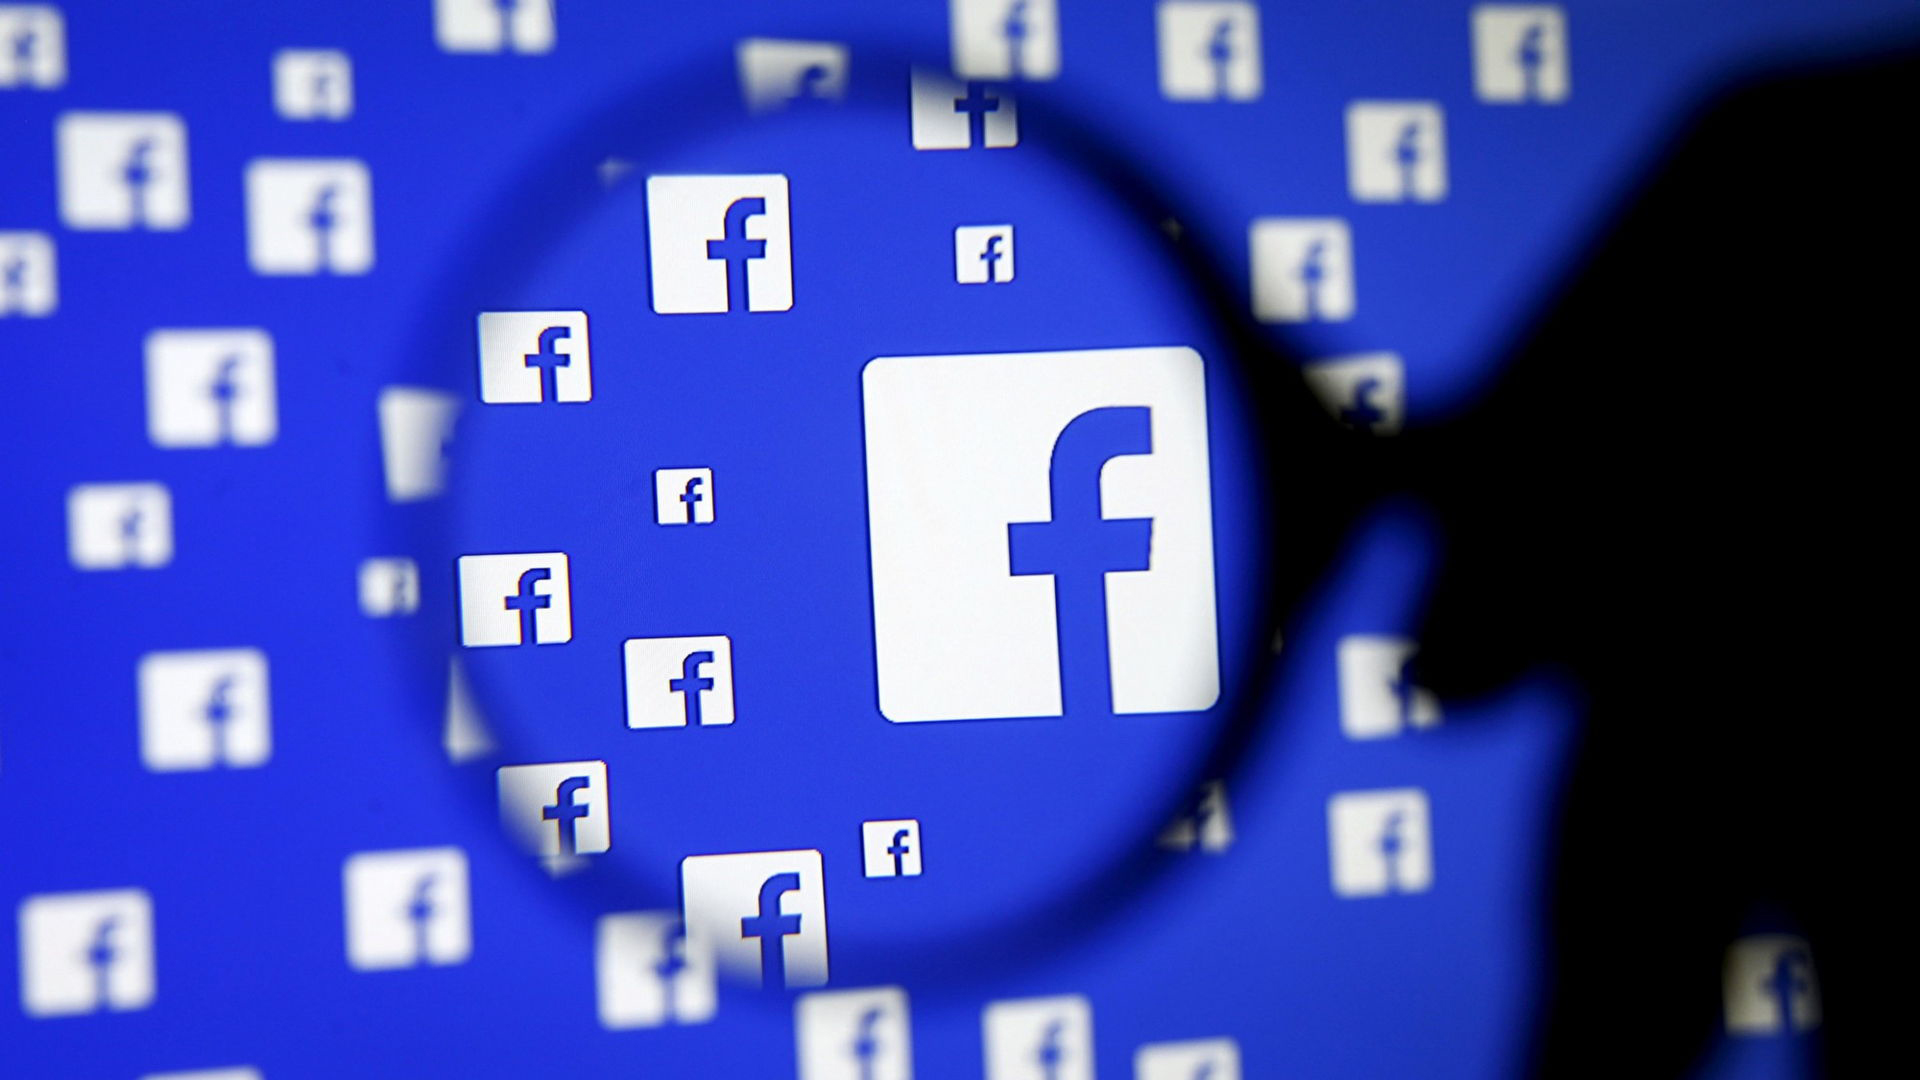 Nếu report vì mục đích xấu tại Việt Nam, Facebook tuyên bố sẽ khóa tài khoản vĩnh viễn